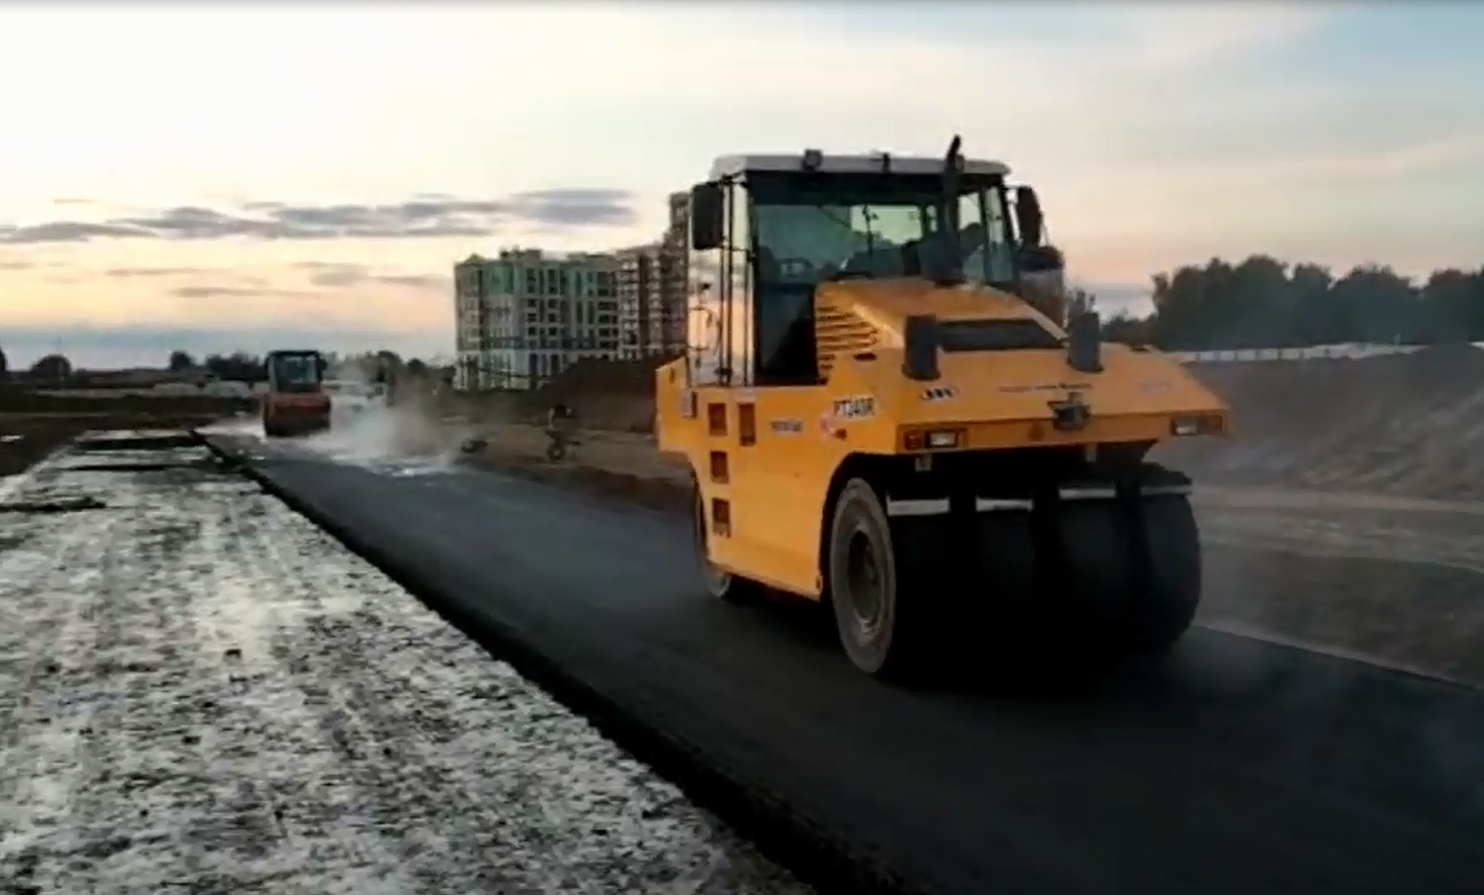  ЖК «Лайково»: развитие дорожно-транспортной инфраструктуры 